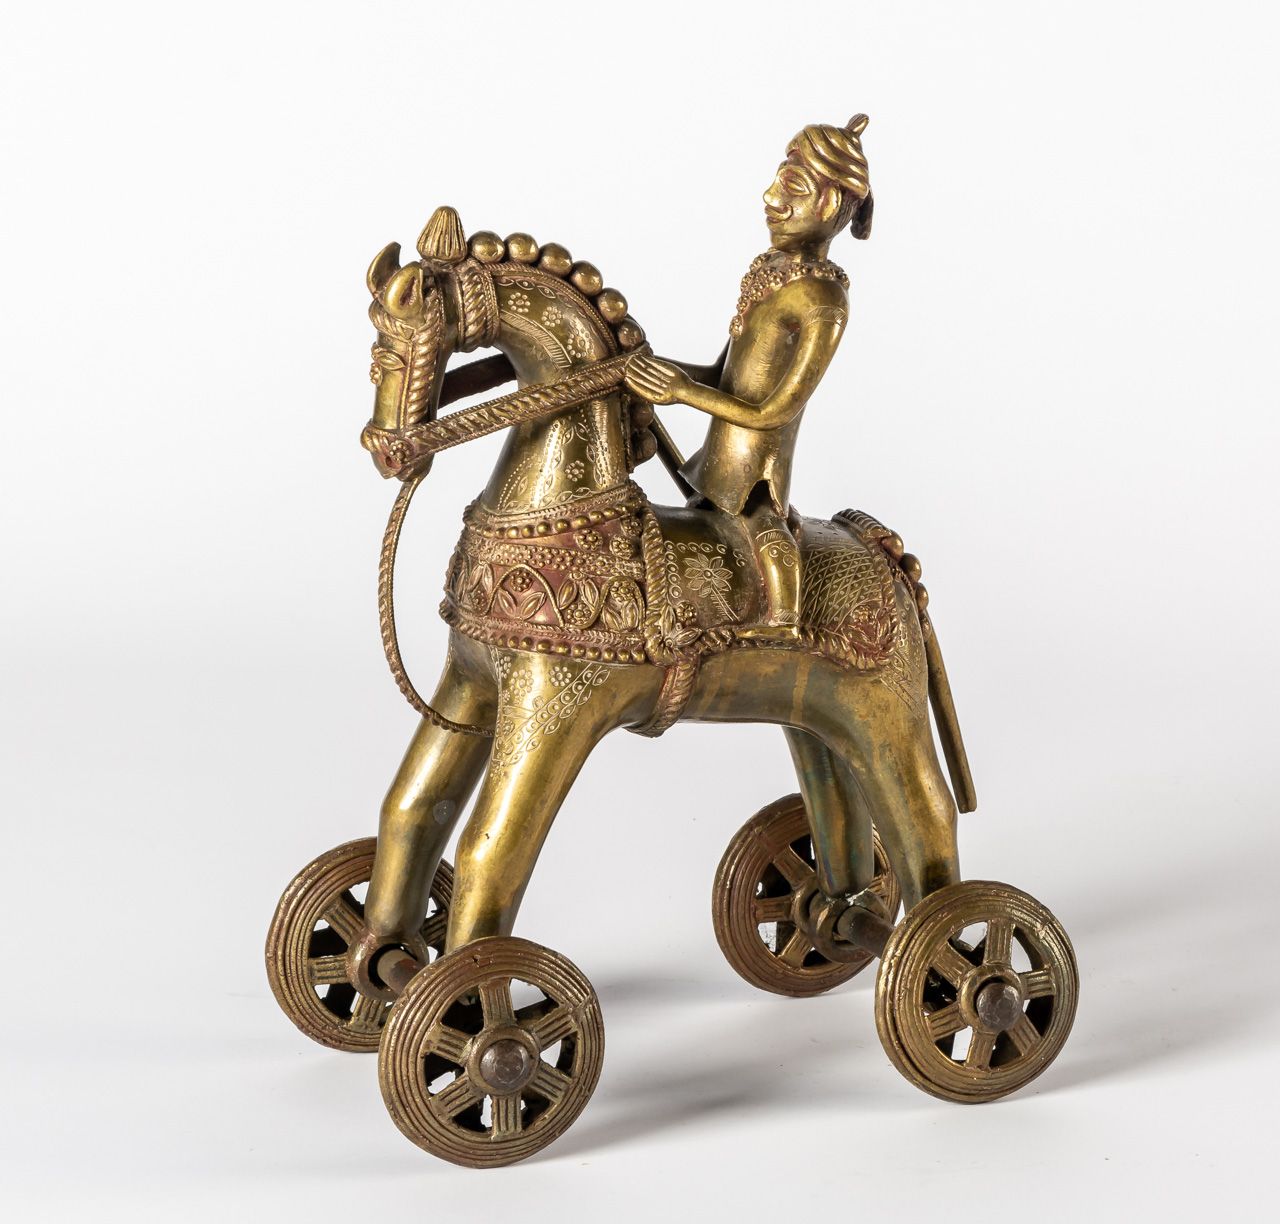 KRIEGER AUF PFERD A WARRIOR ON HORSE_x000D_

India (?), brass, probably 1st half&hellip;